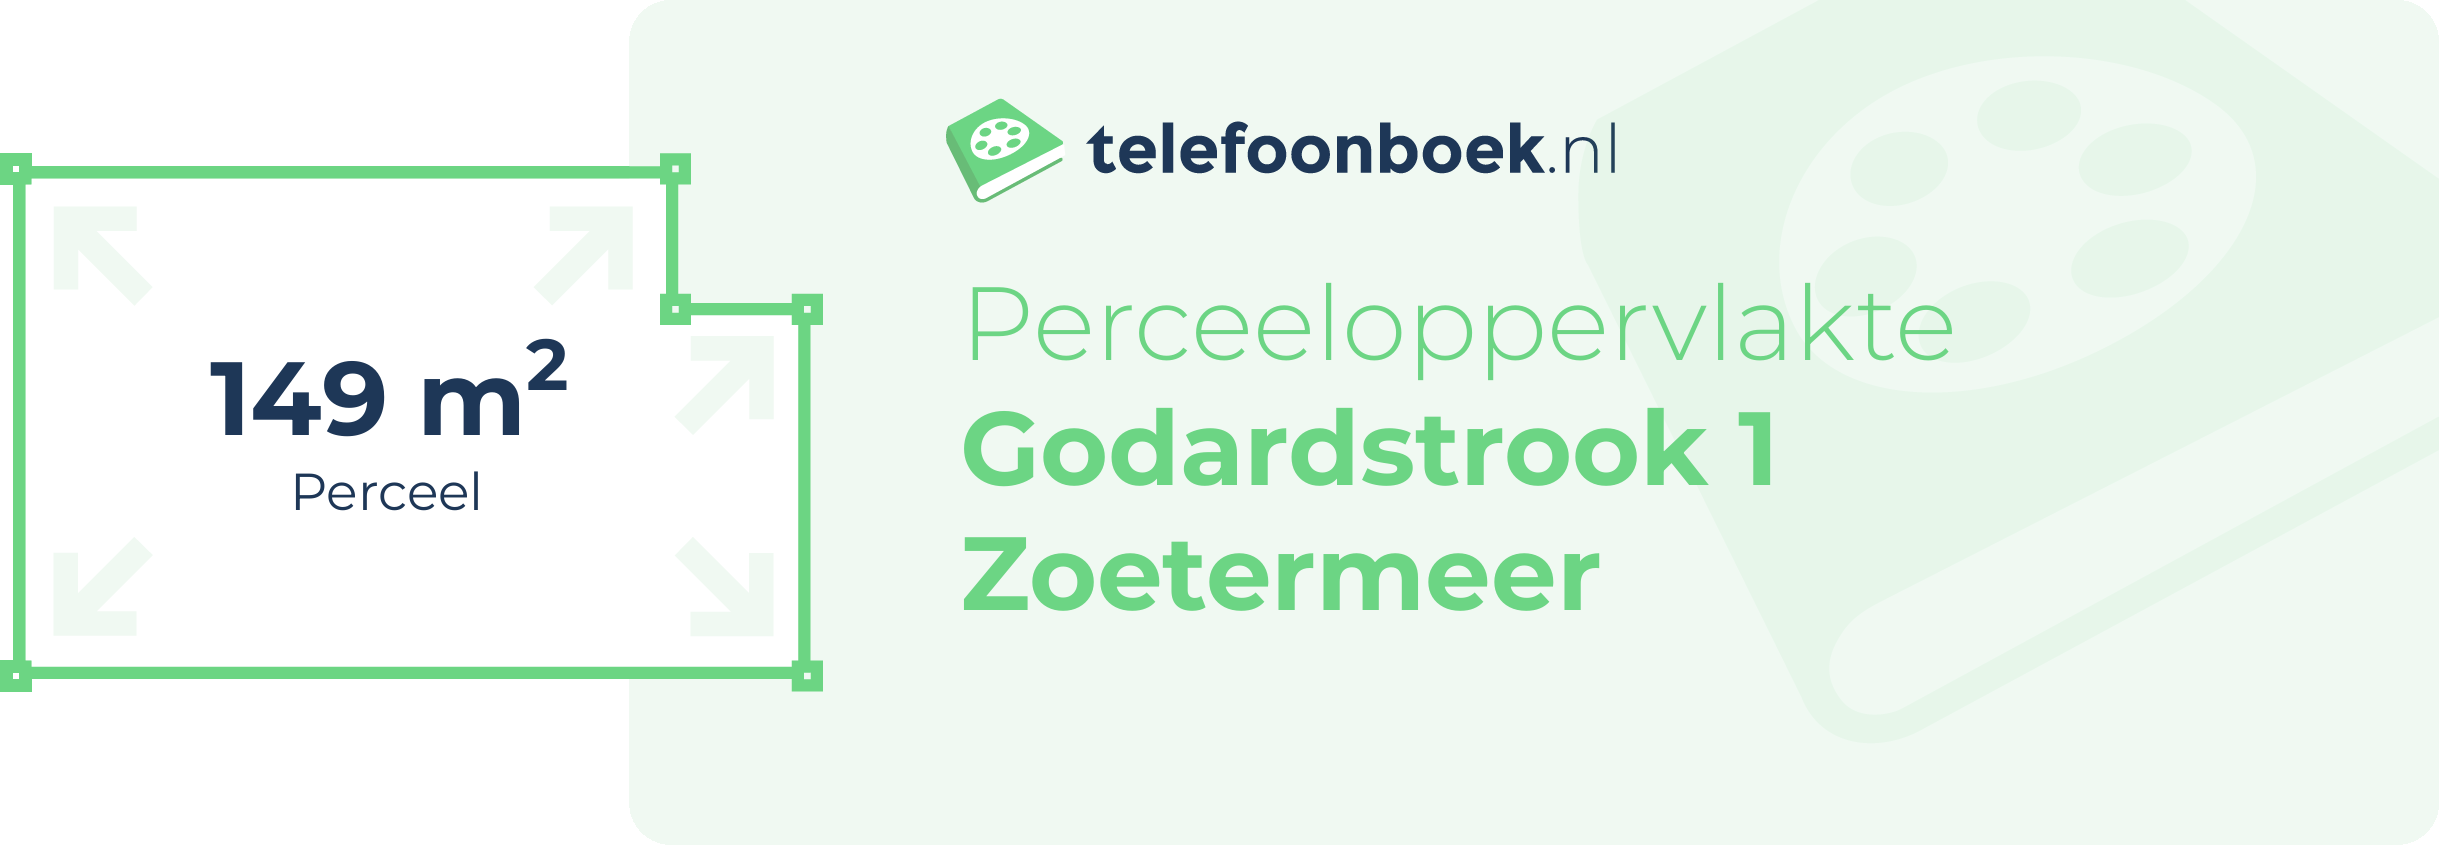 Perceeloppervlakte Godardstrook 1 Zoetermeer